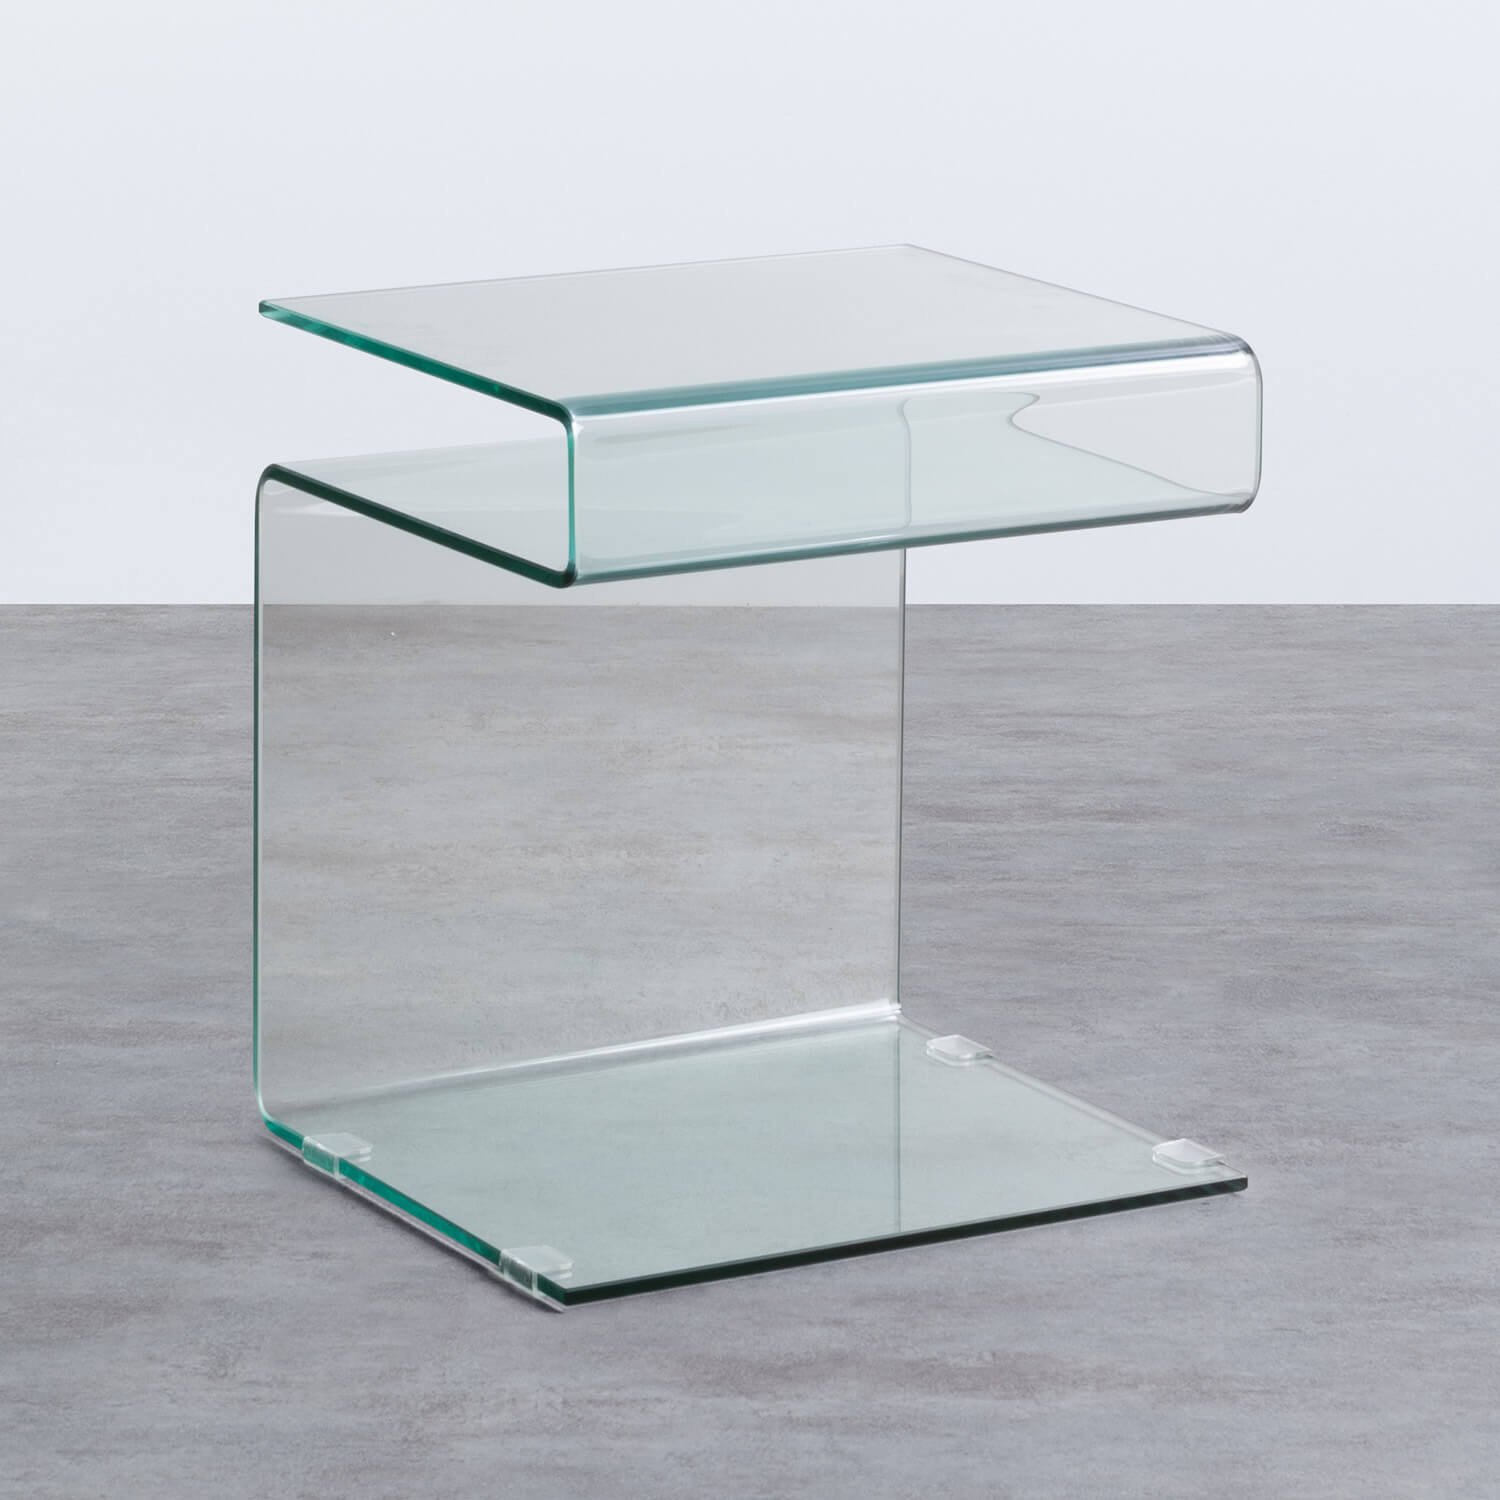 Tavolino Ausiliario Quadrato in Cristallo (42x38 cm) Erox, immagine della galleria 1